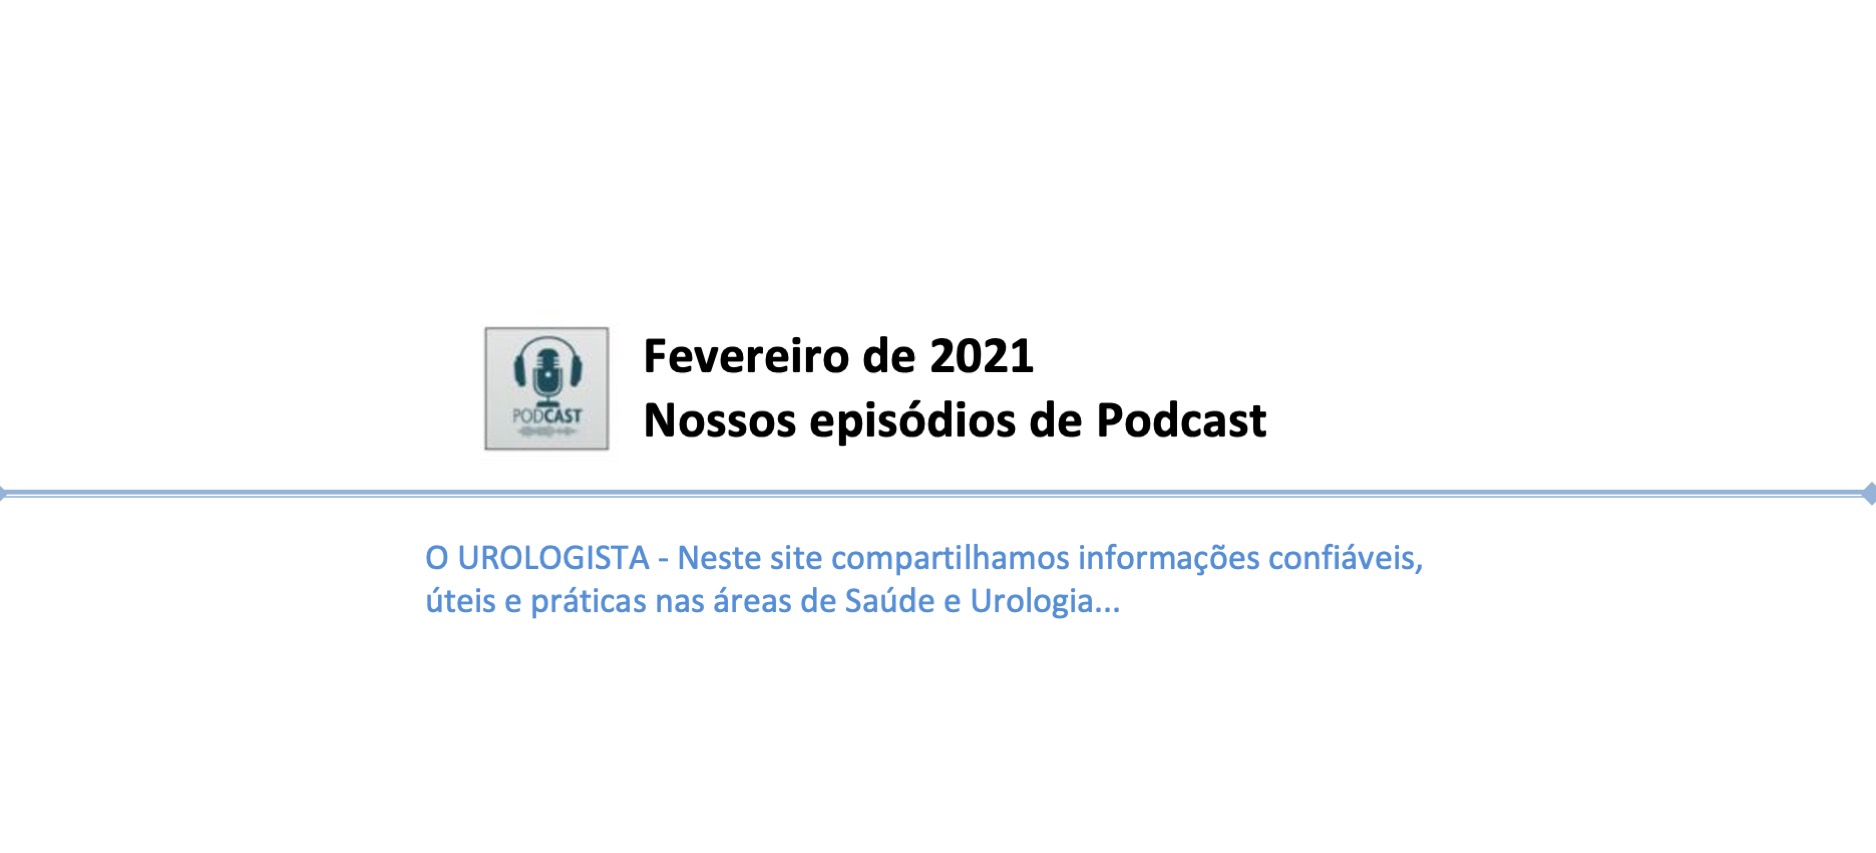 Fevereiro de 2021: nossos episódios de Podcast